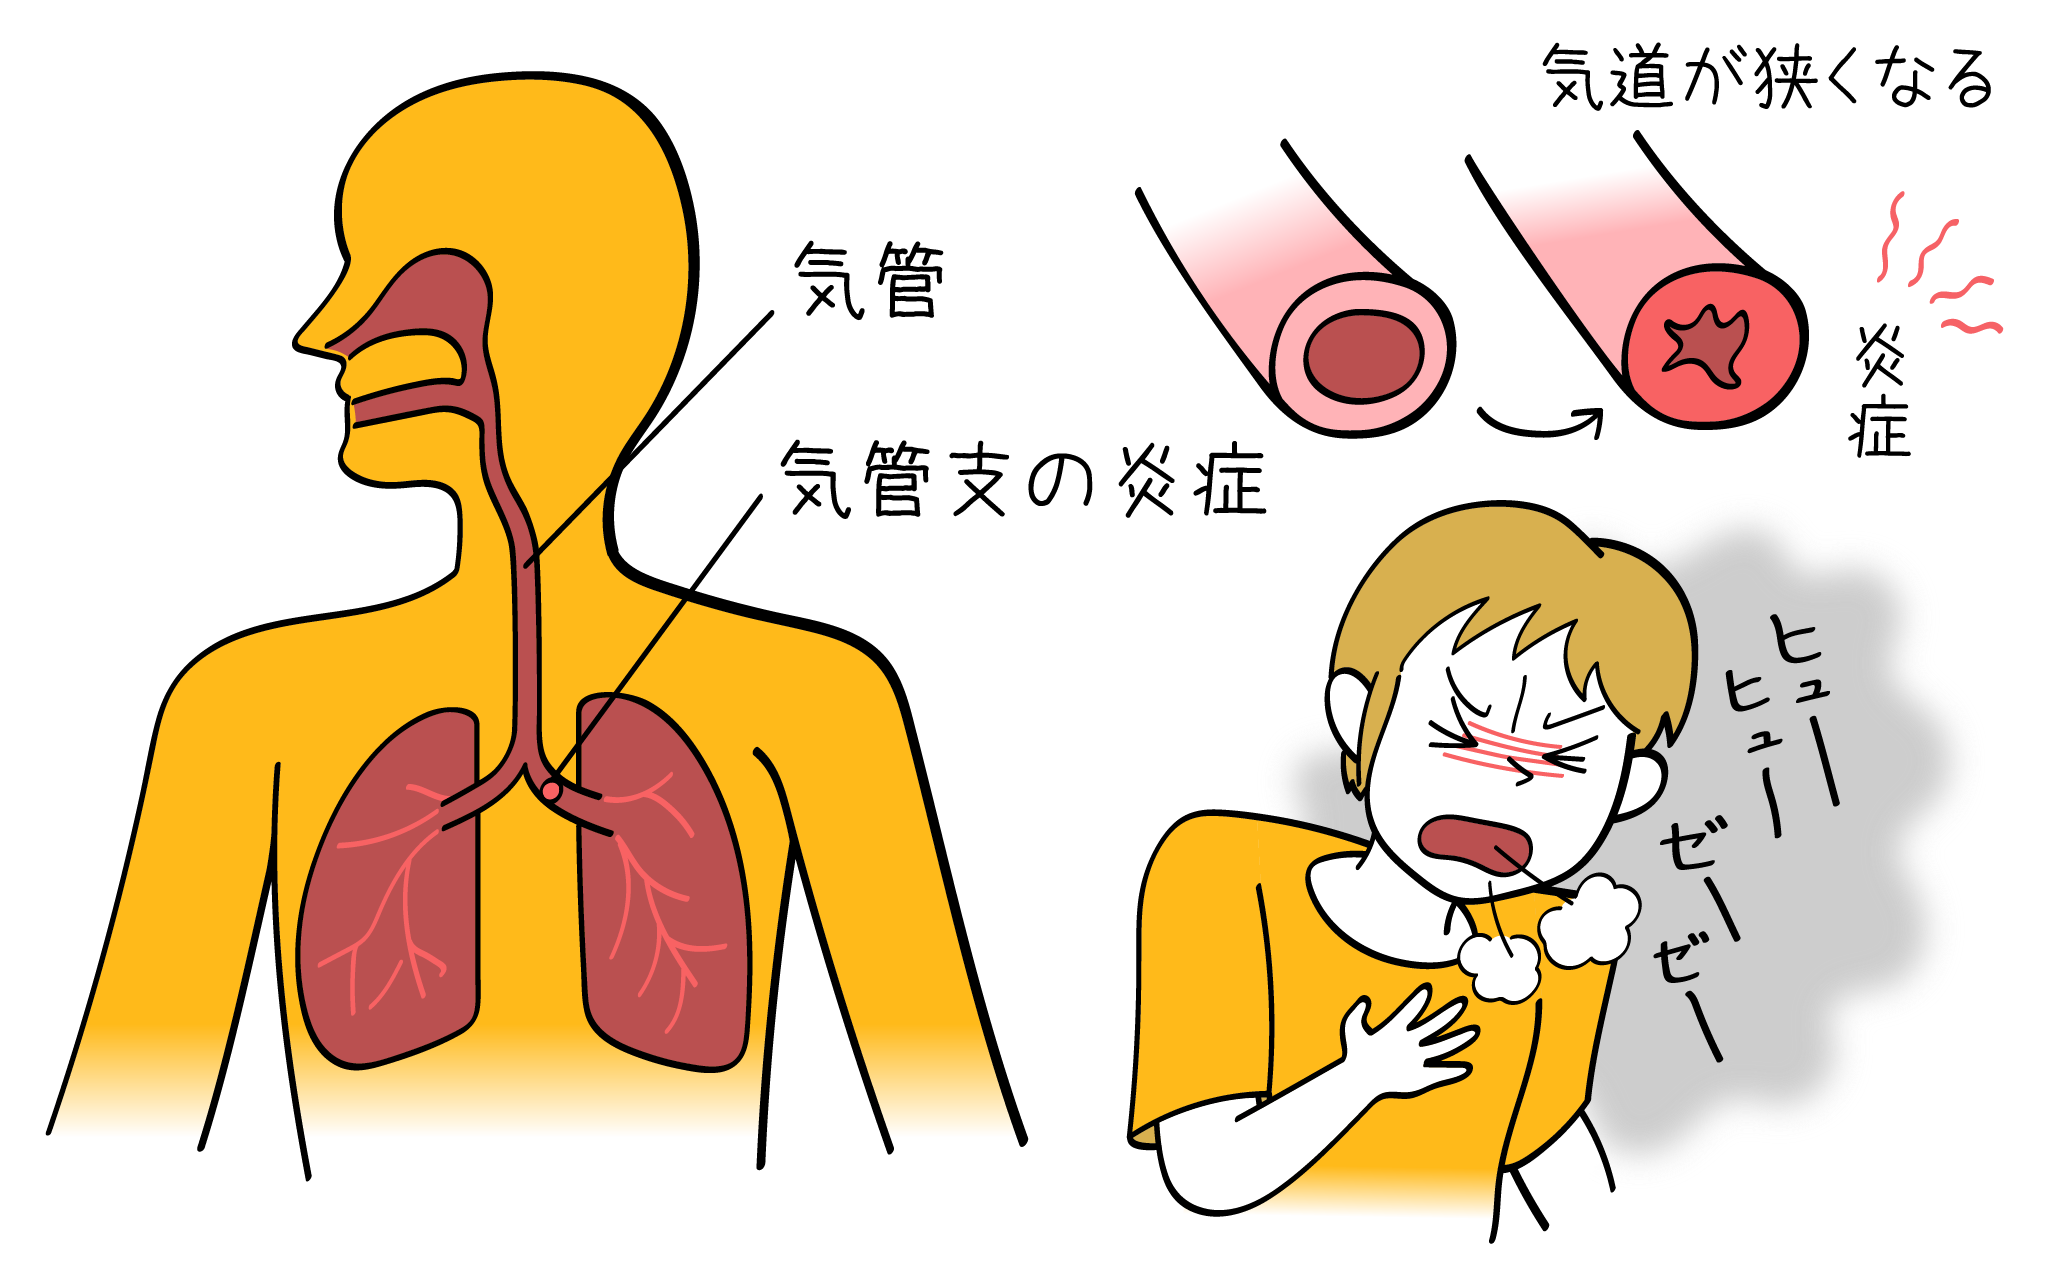 気管支喘息の症状や原因について内科専門医が詳しく解説したイラストになります。